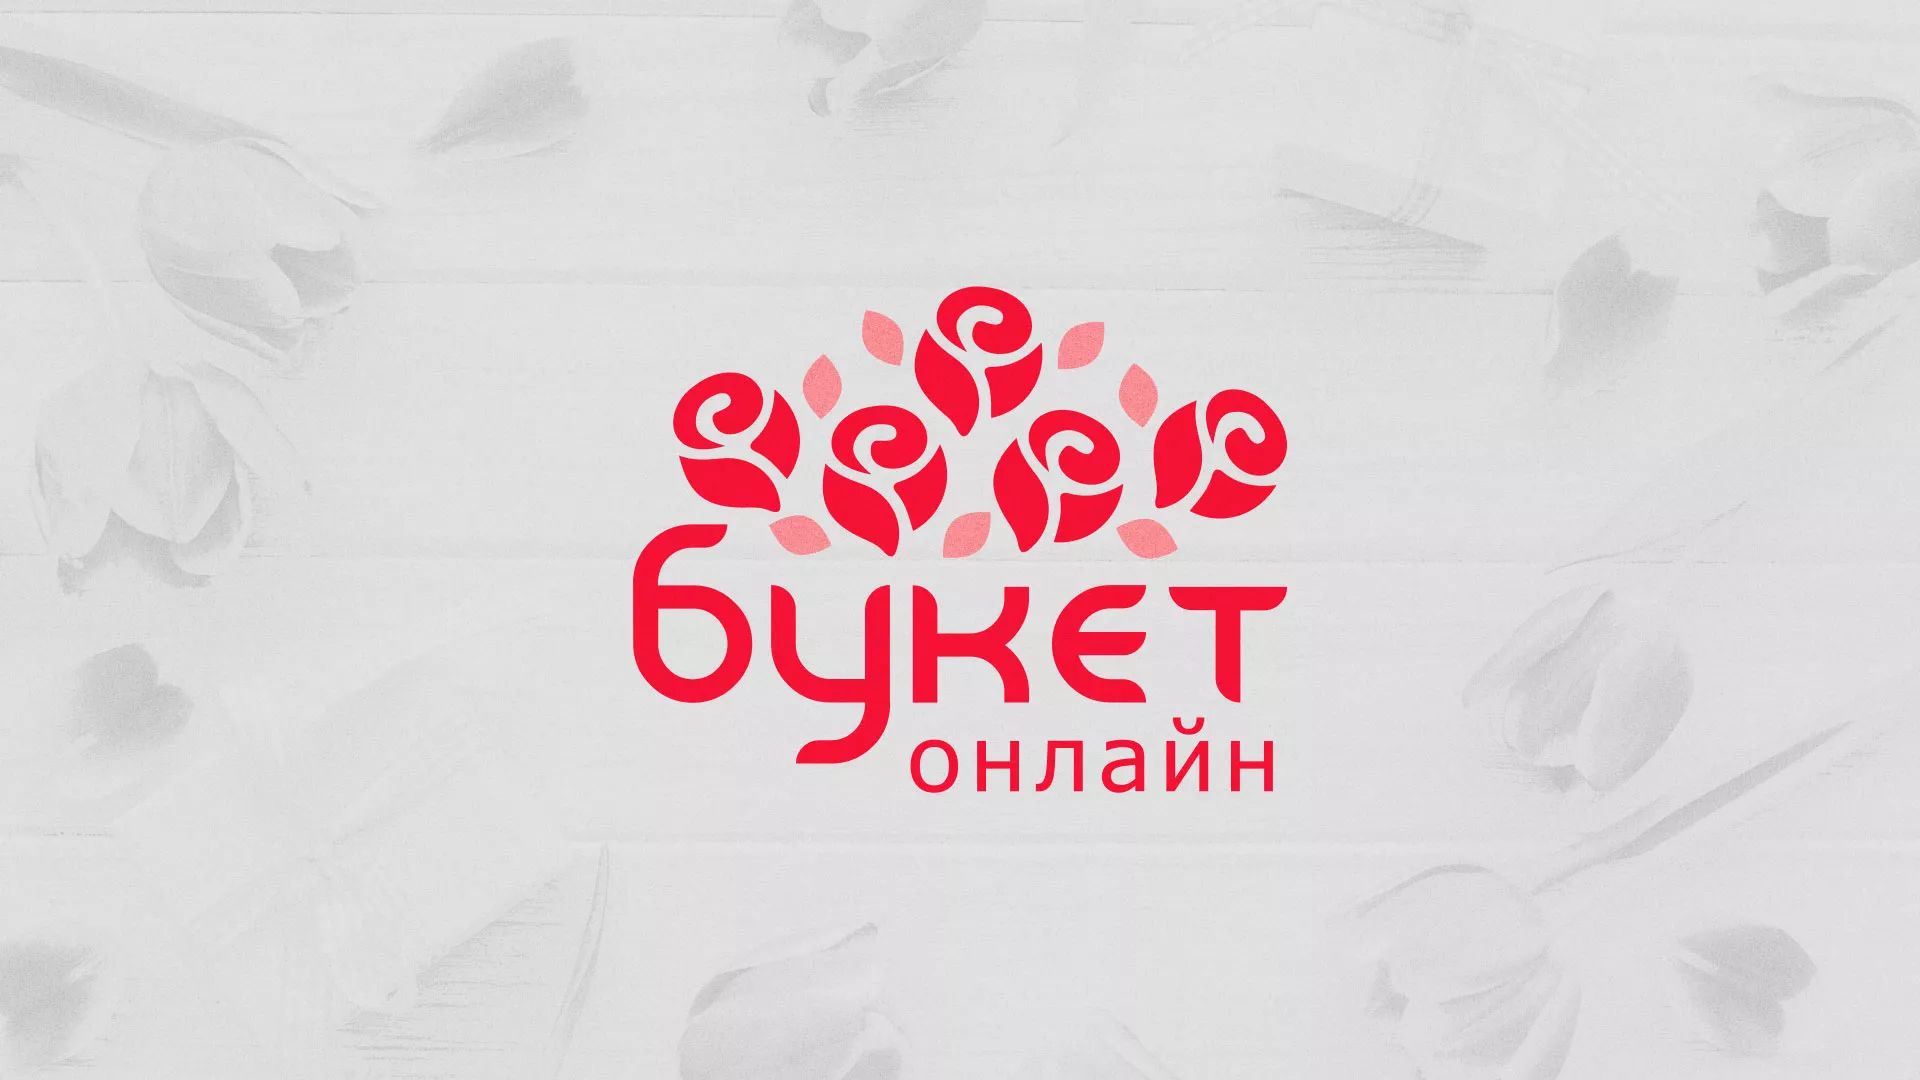 Создание интернет-магазина «Букет-онлайн» по цветам в Сурске